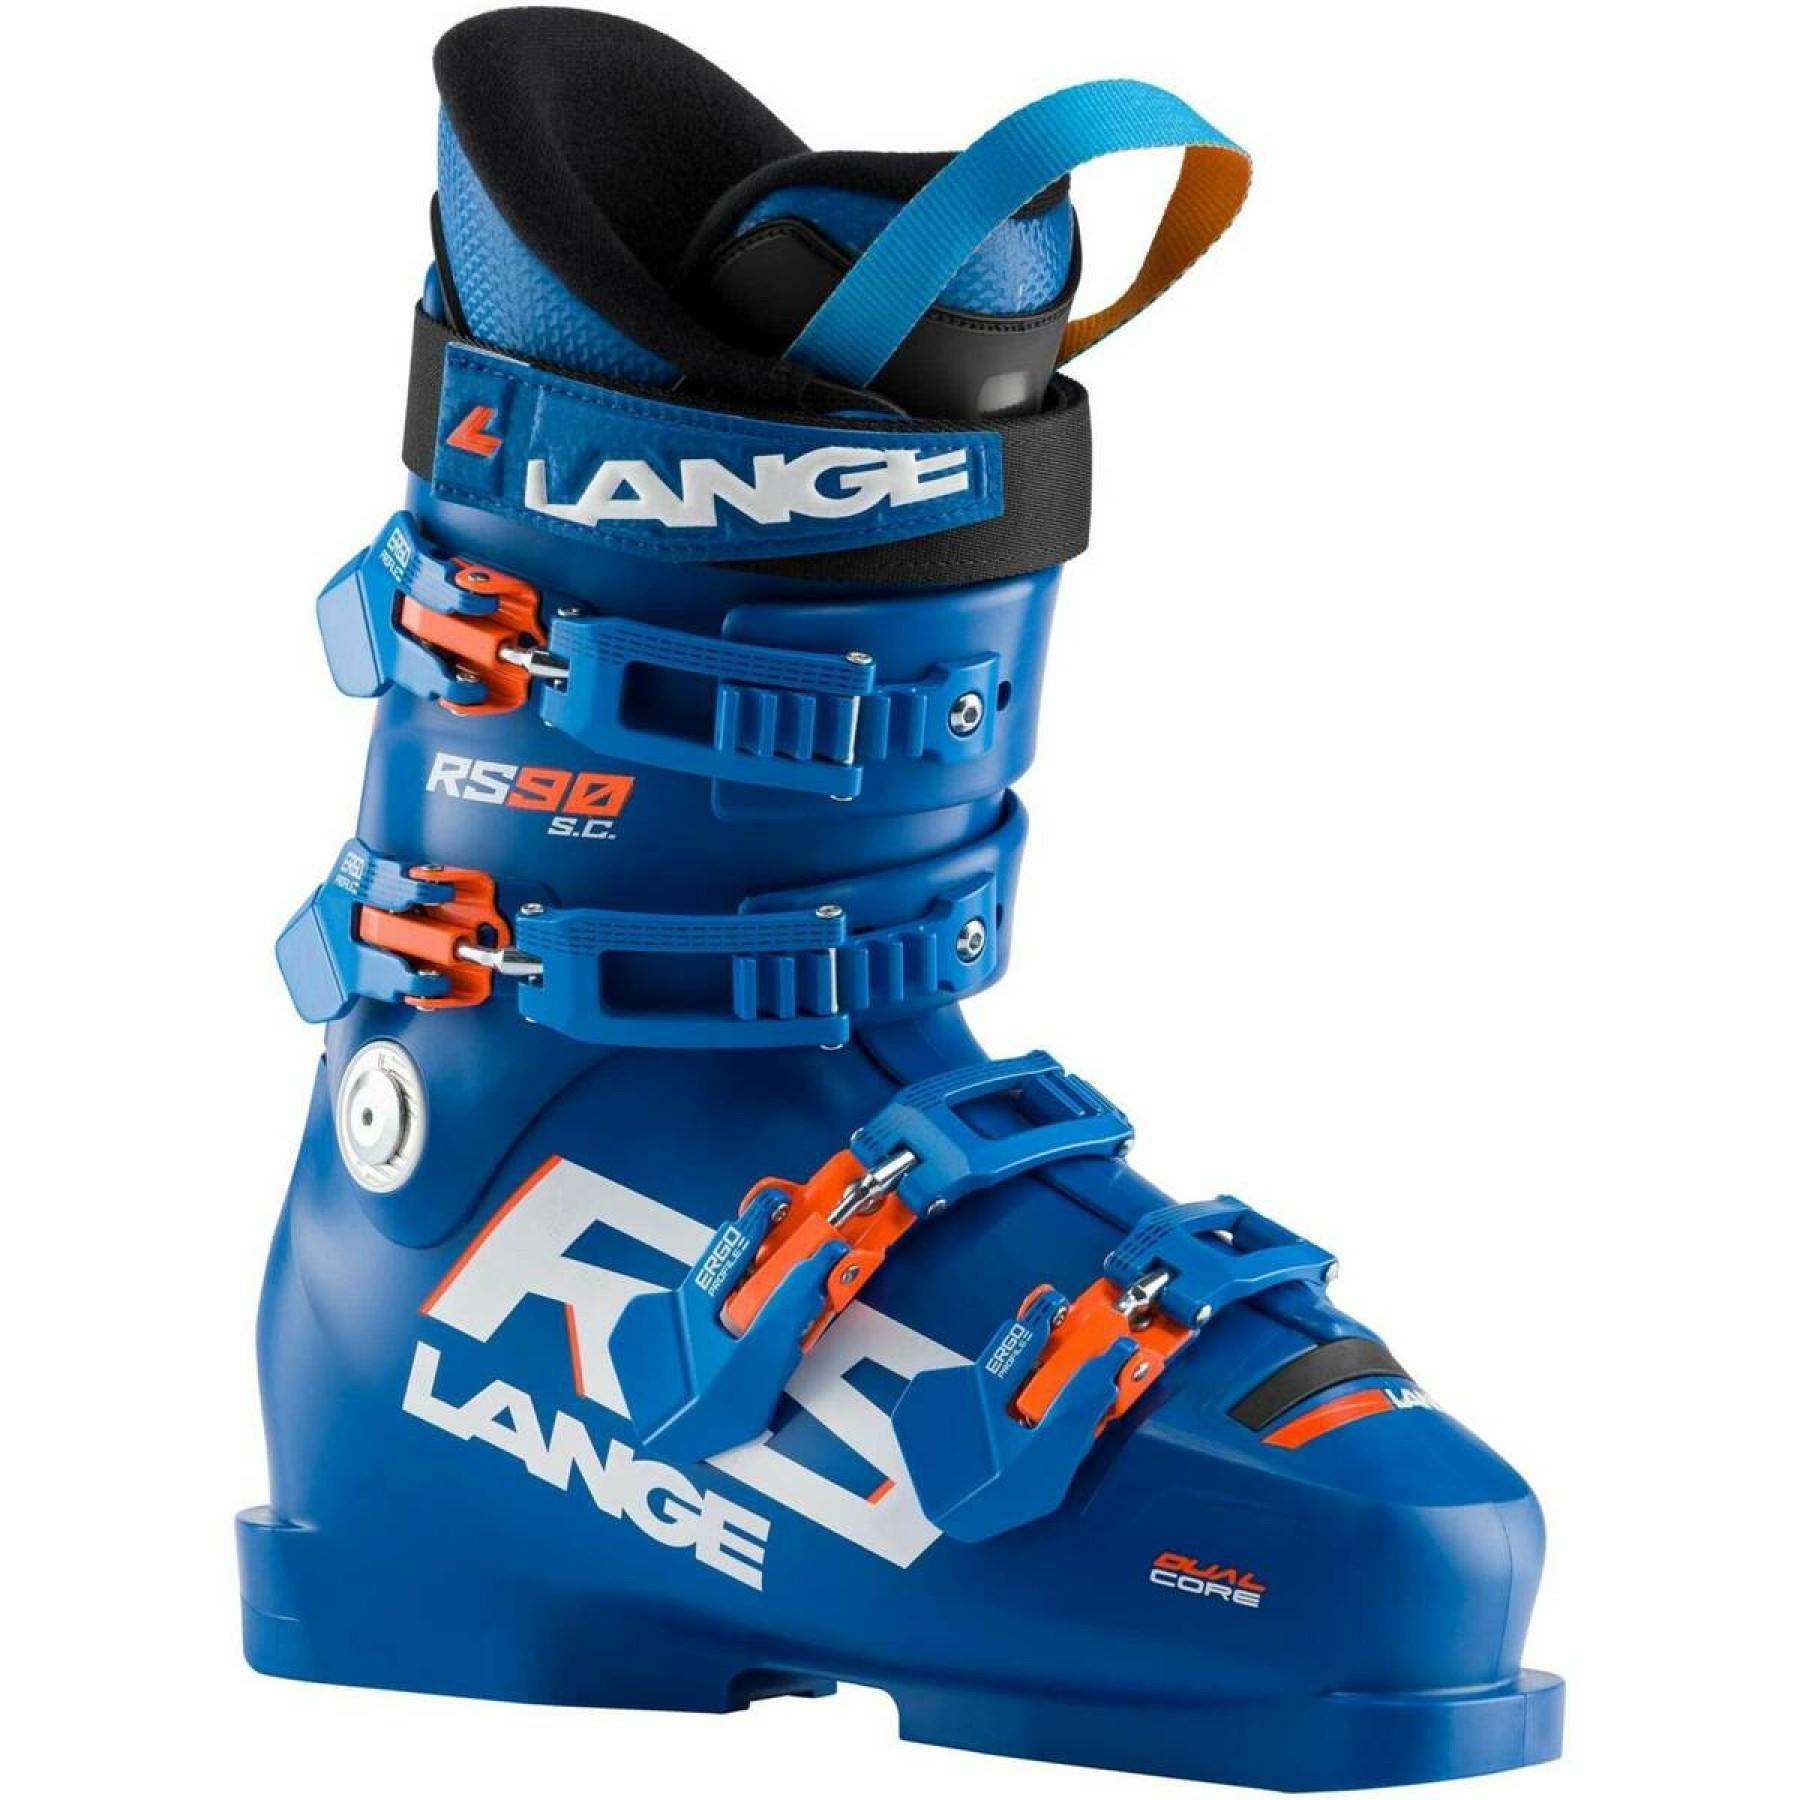 Calçado de esqui criança Lange rs 90 s.c.